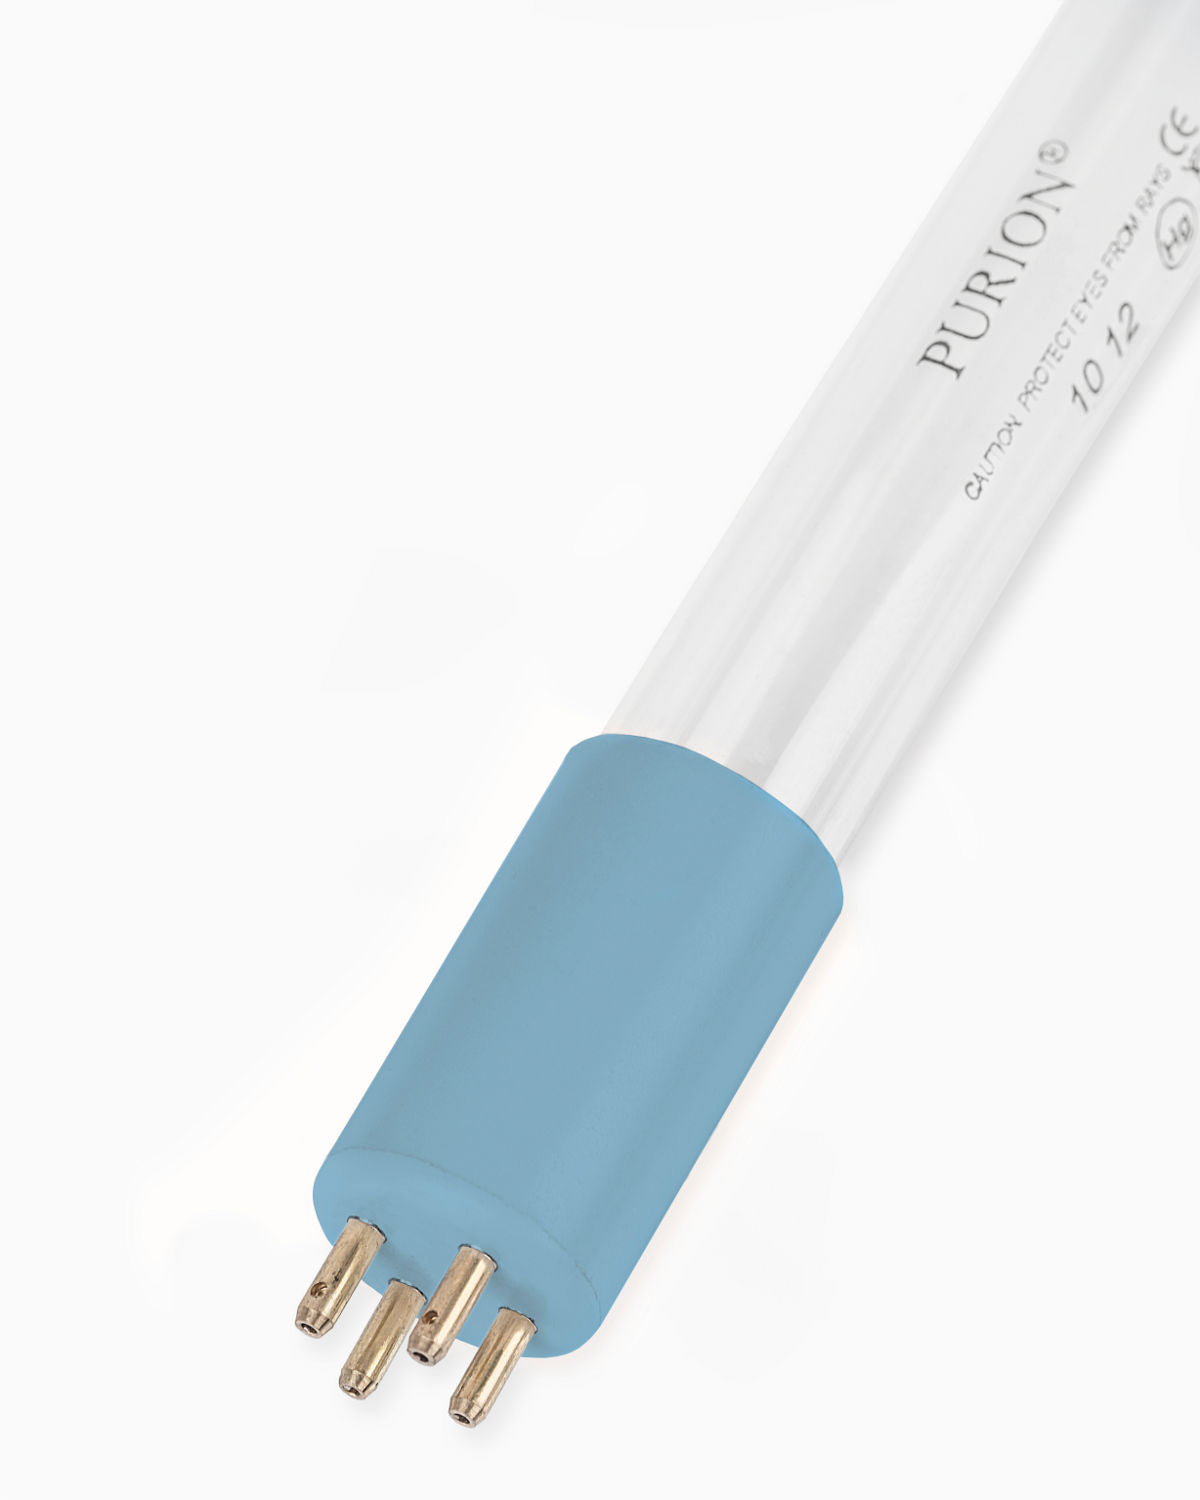 Eine Blaulichtröhre, die PURION IBC Universal 17W SPL BS OTC 12V/24V von UV Concept GmbH, entwickelt zur Beseitigung von Verkeimungen (Kontaminationen) in Trinkwasserqualität auf weißem Hintergrund.